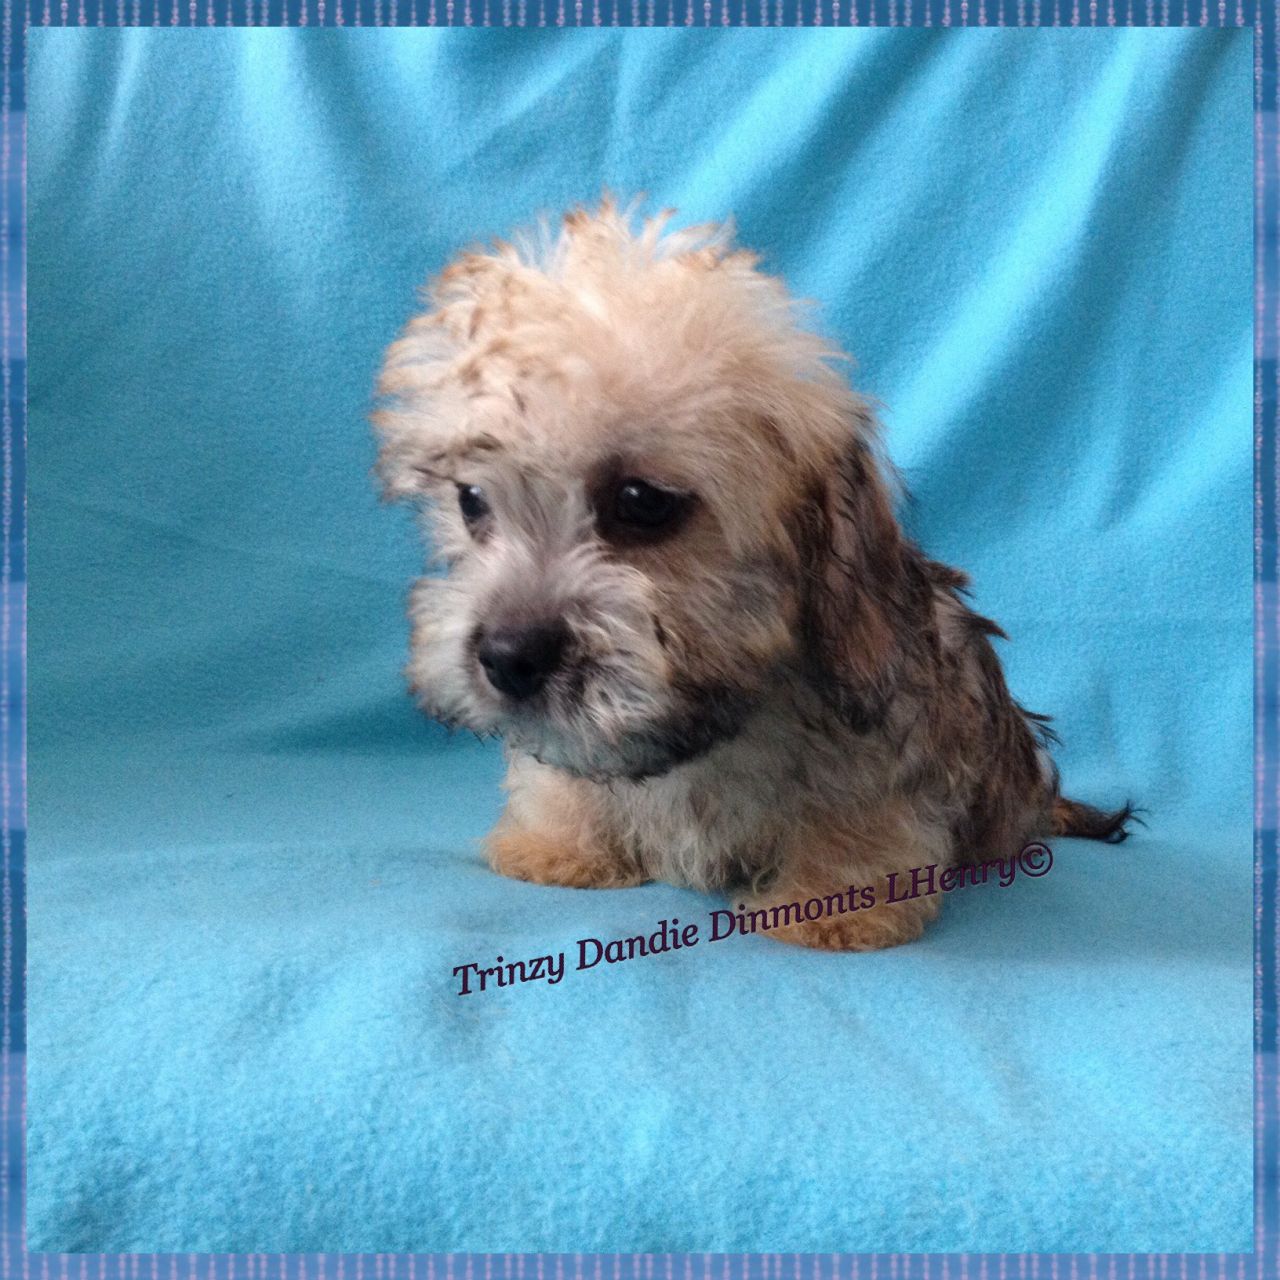 Dandie Dinmont Terrier Puppies: Dandie Dandie Dinmont Terrier Puppies For Sale Ormskirk Breed